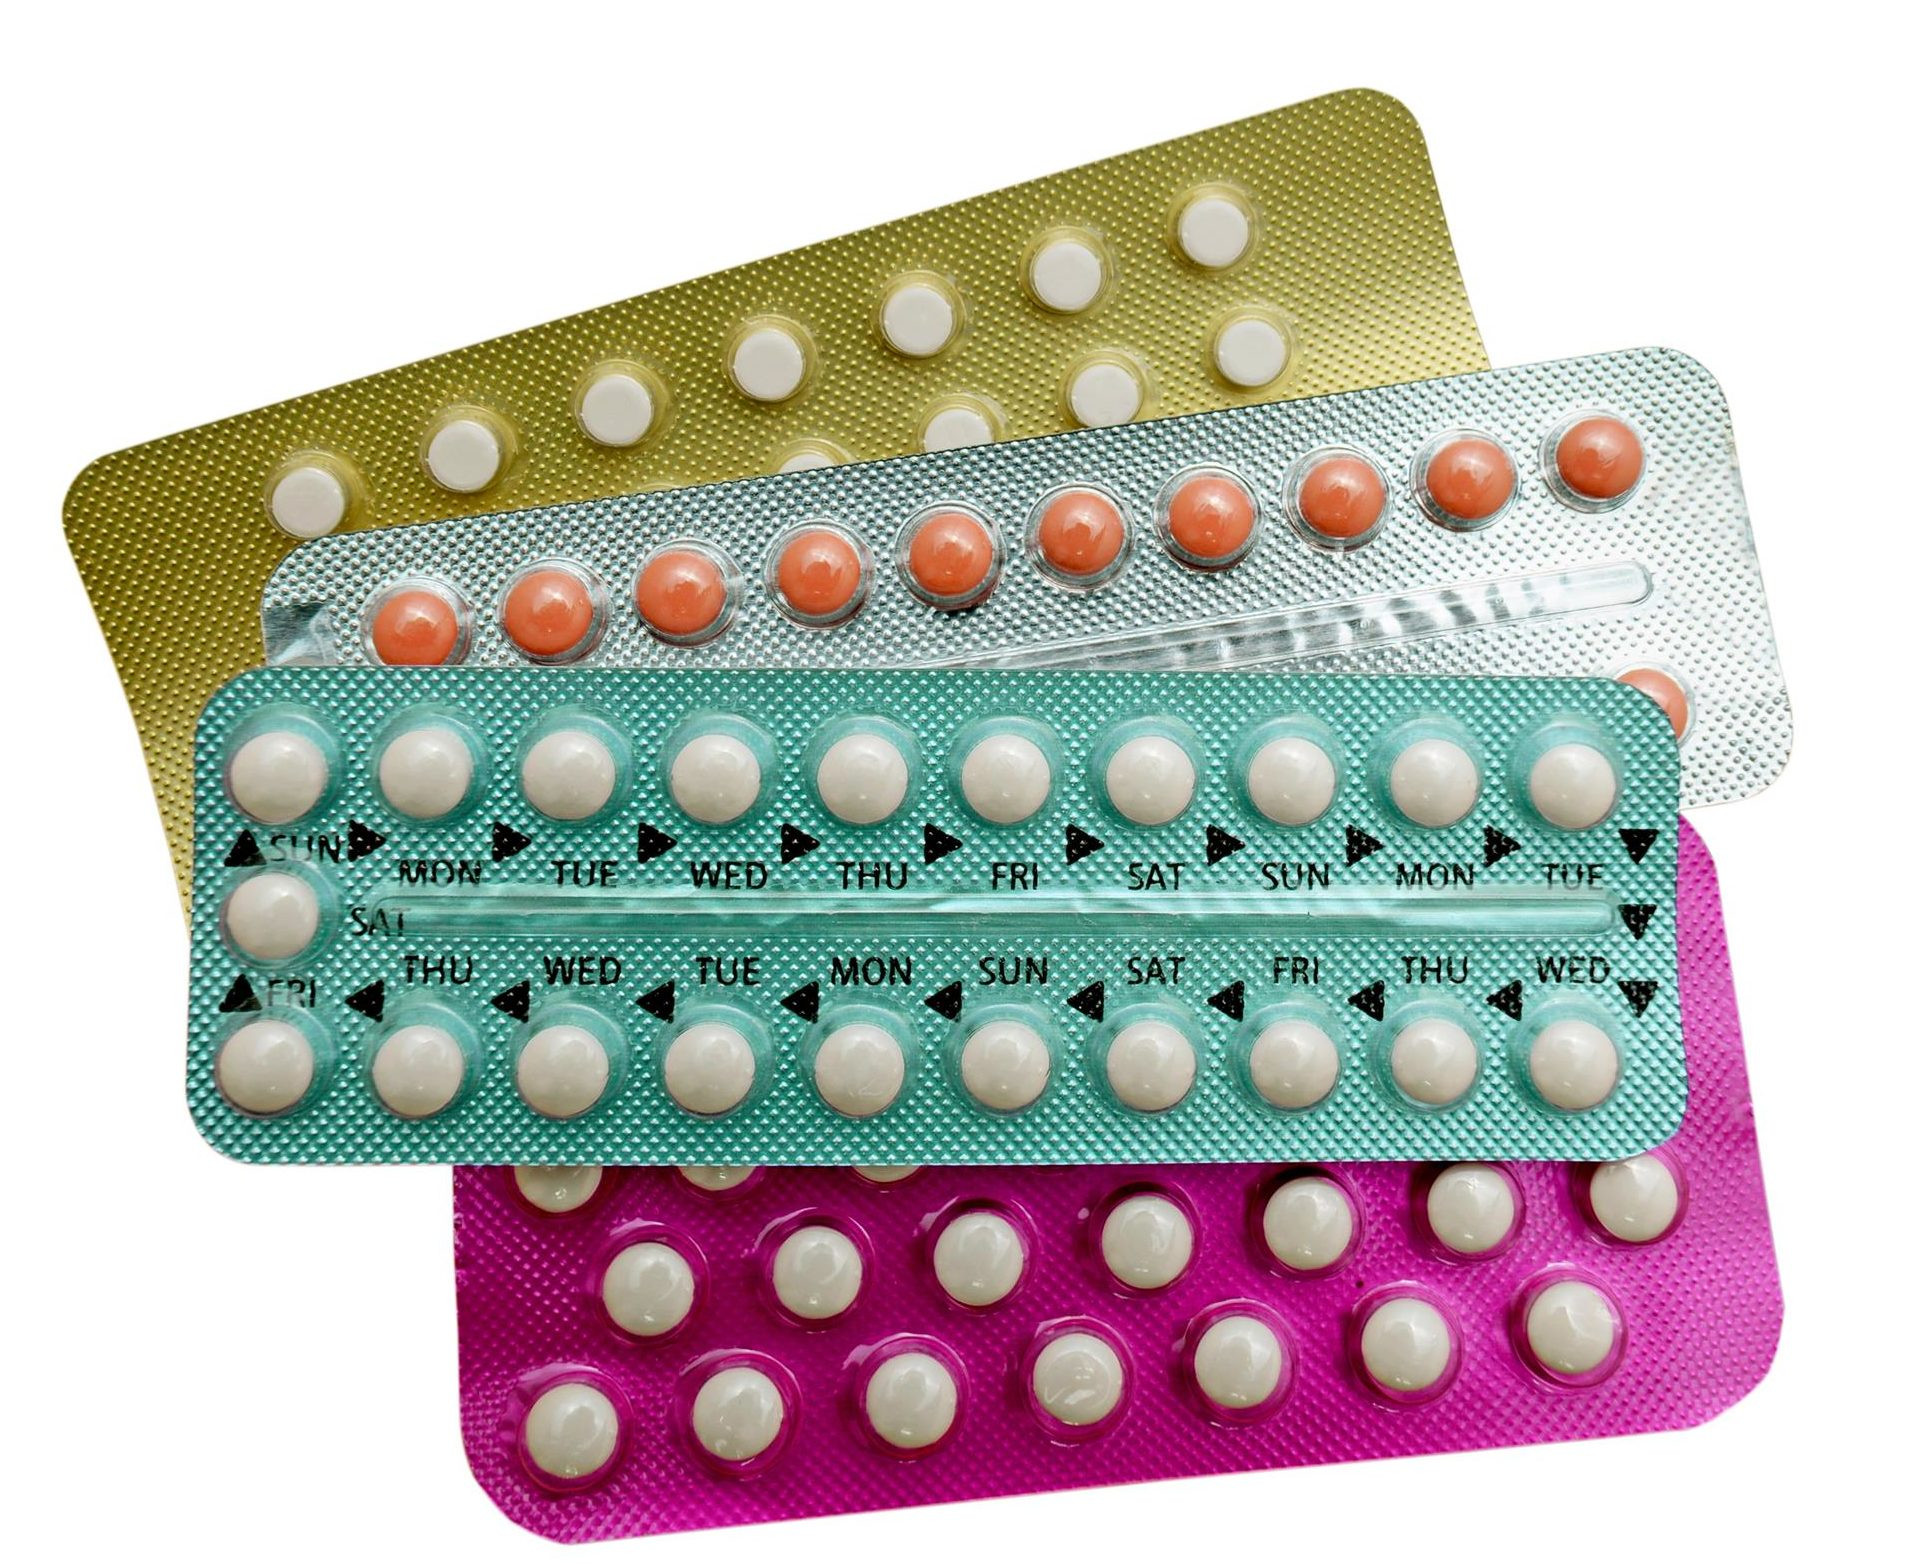 Ngoài các tác dụng phụ thì khi ngừng thuốc tránh thai cũng có một số tác dụng có lợi cho cơ thể bạn nữ